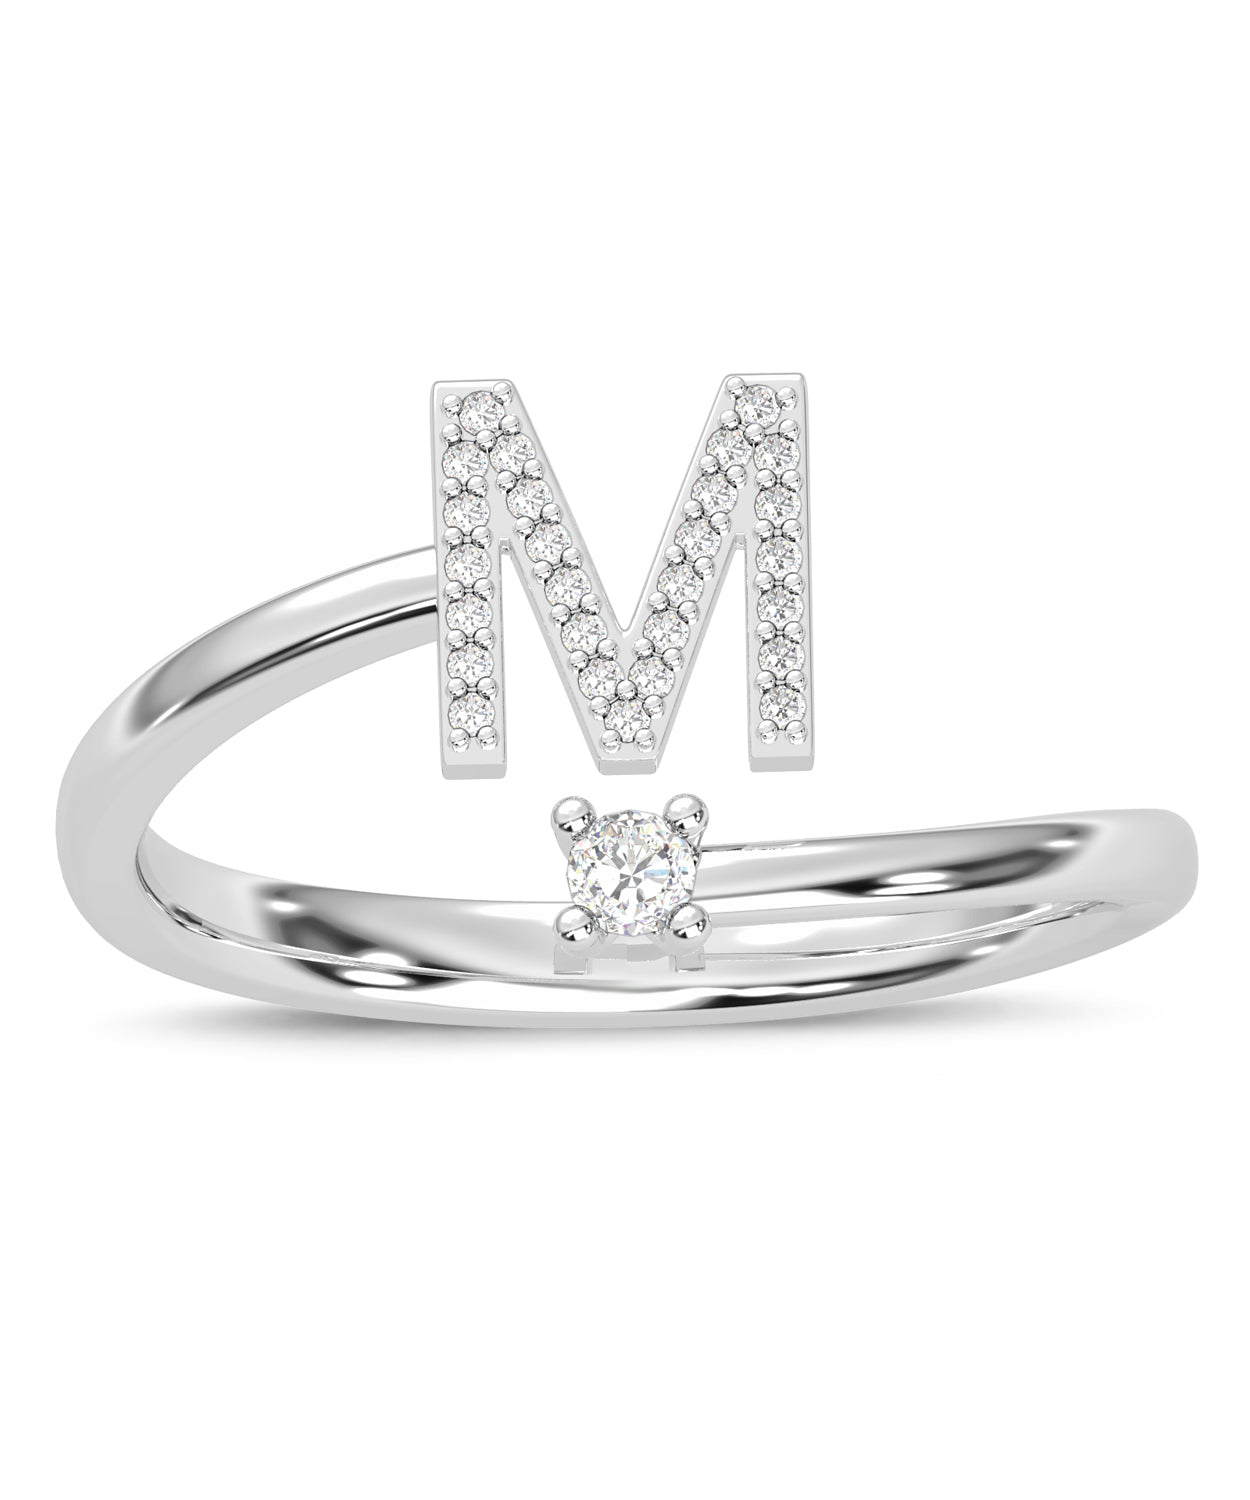 ESEMCO Diamond 18k White Gold Letter M Initial Open Ring View 3